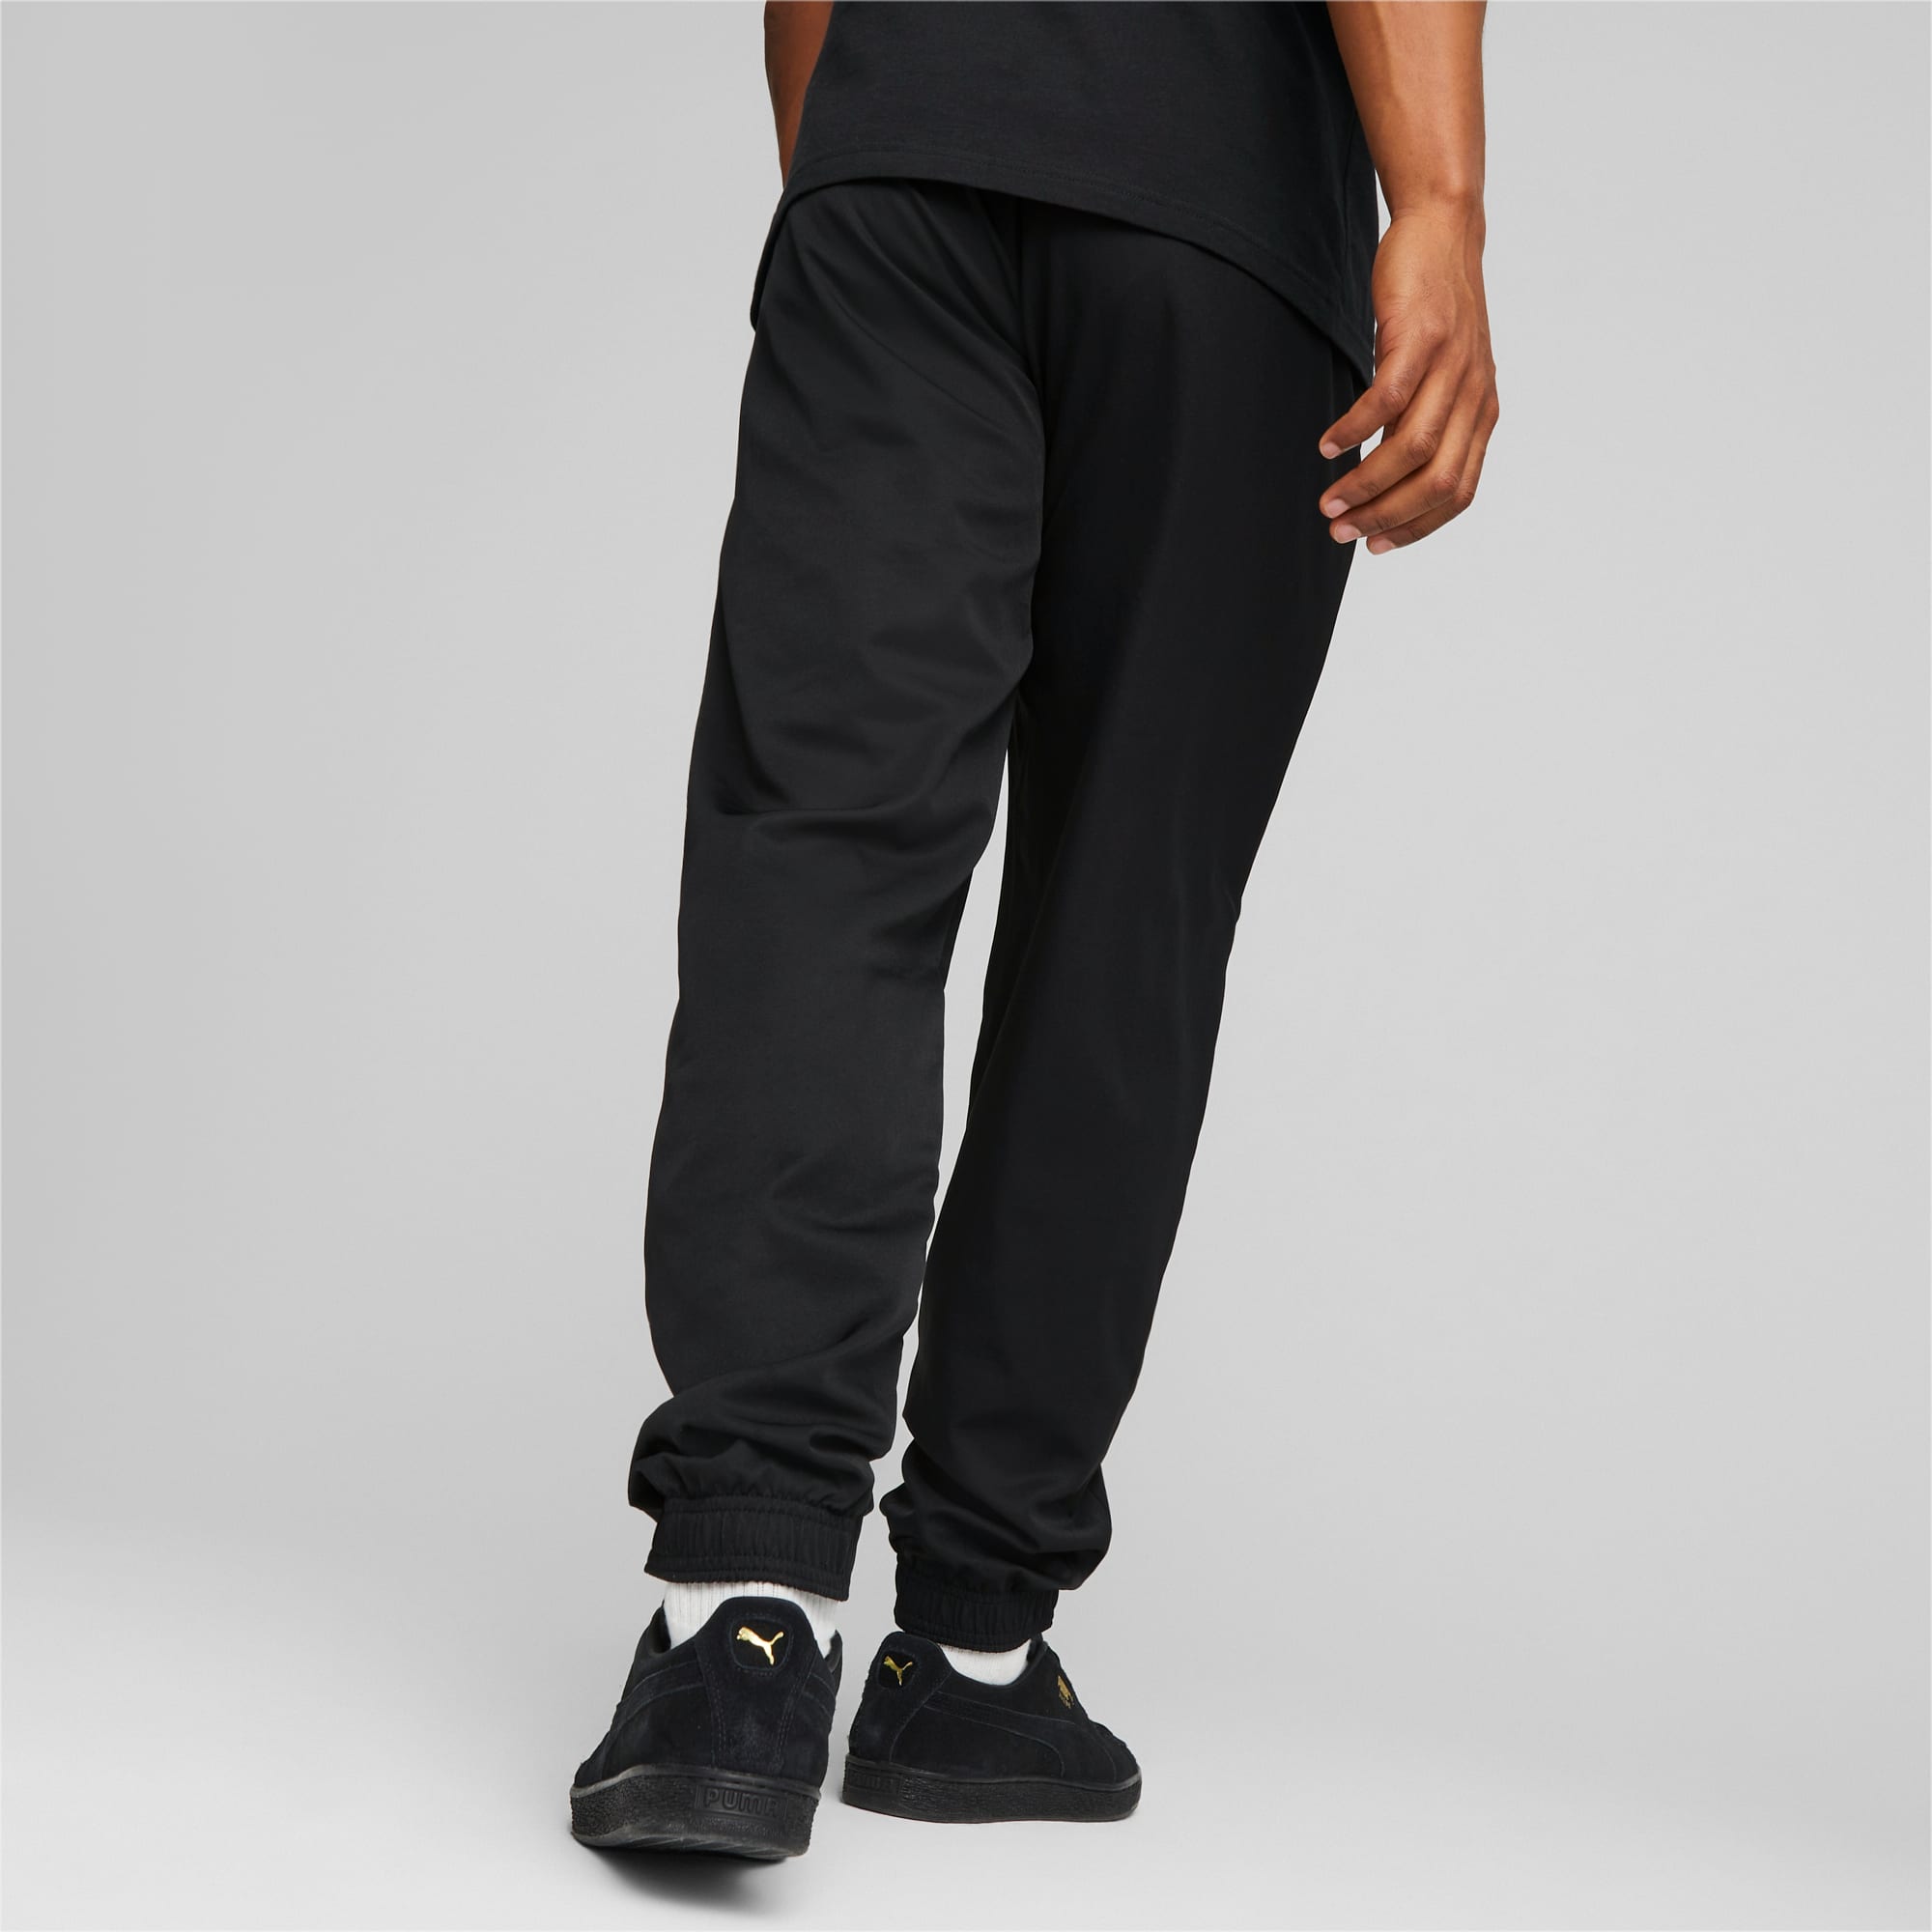 PUMA Active Woven Men's Pants, Black, Size XS, Clothing